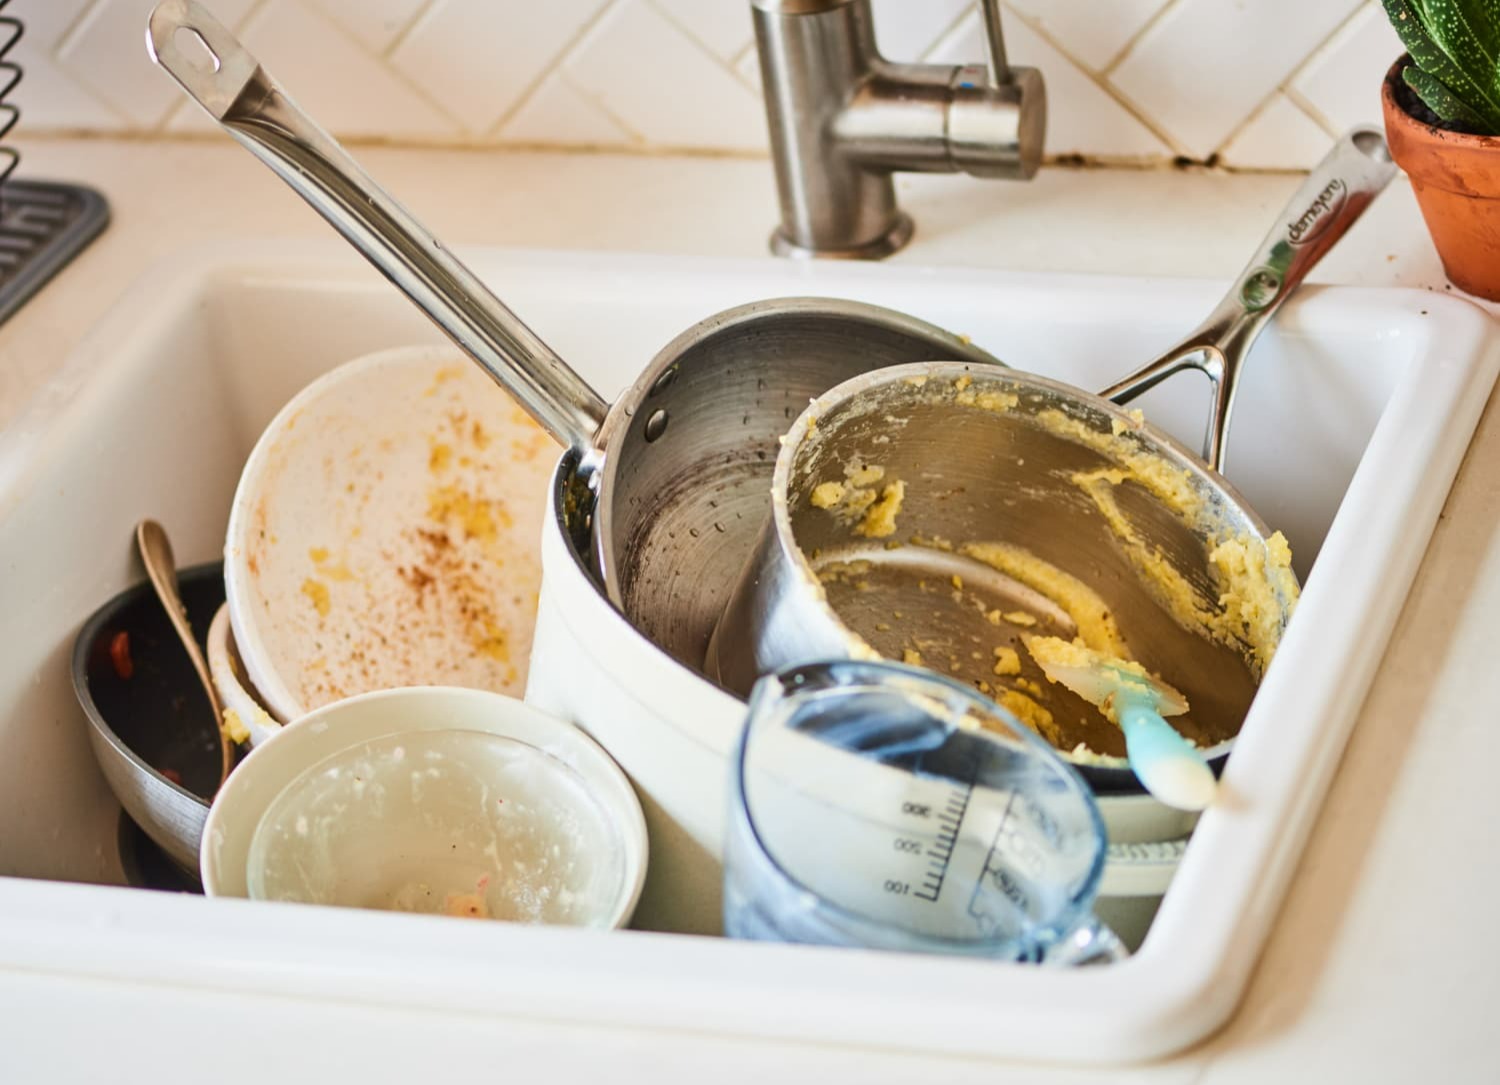 ظروف نشسته - کثیف ترین لوازم آشپزخانه